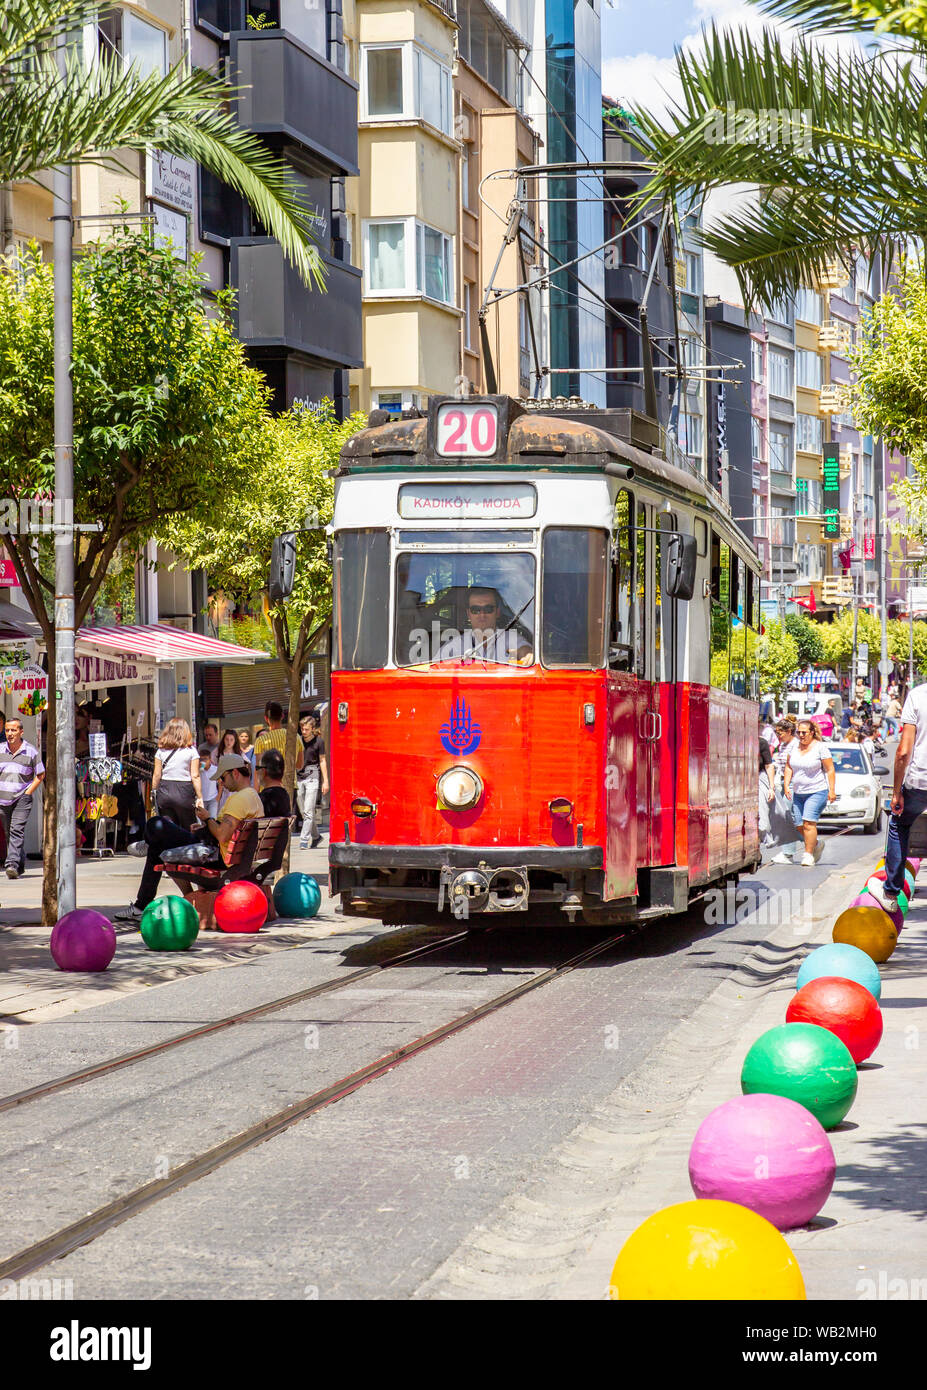 Istanbul, Turchia - 05 agosto 2019: Kadikoy - distretto di moda. Il vecchio tram nostalgico passando attraverso le strade del Lato Asiatico di Istanbul. Vintage tram rosso Foto Stock